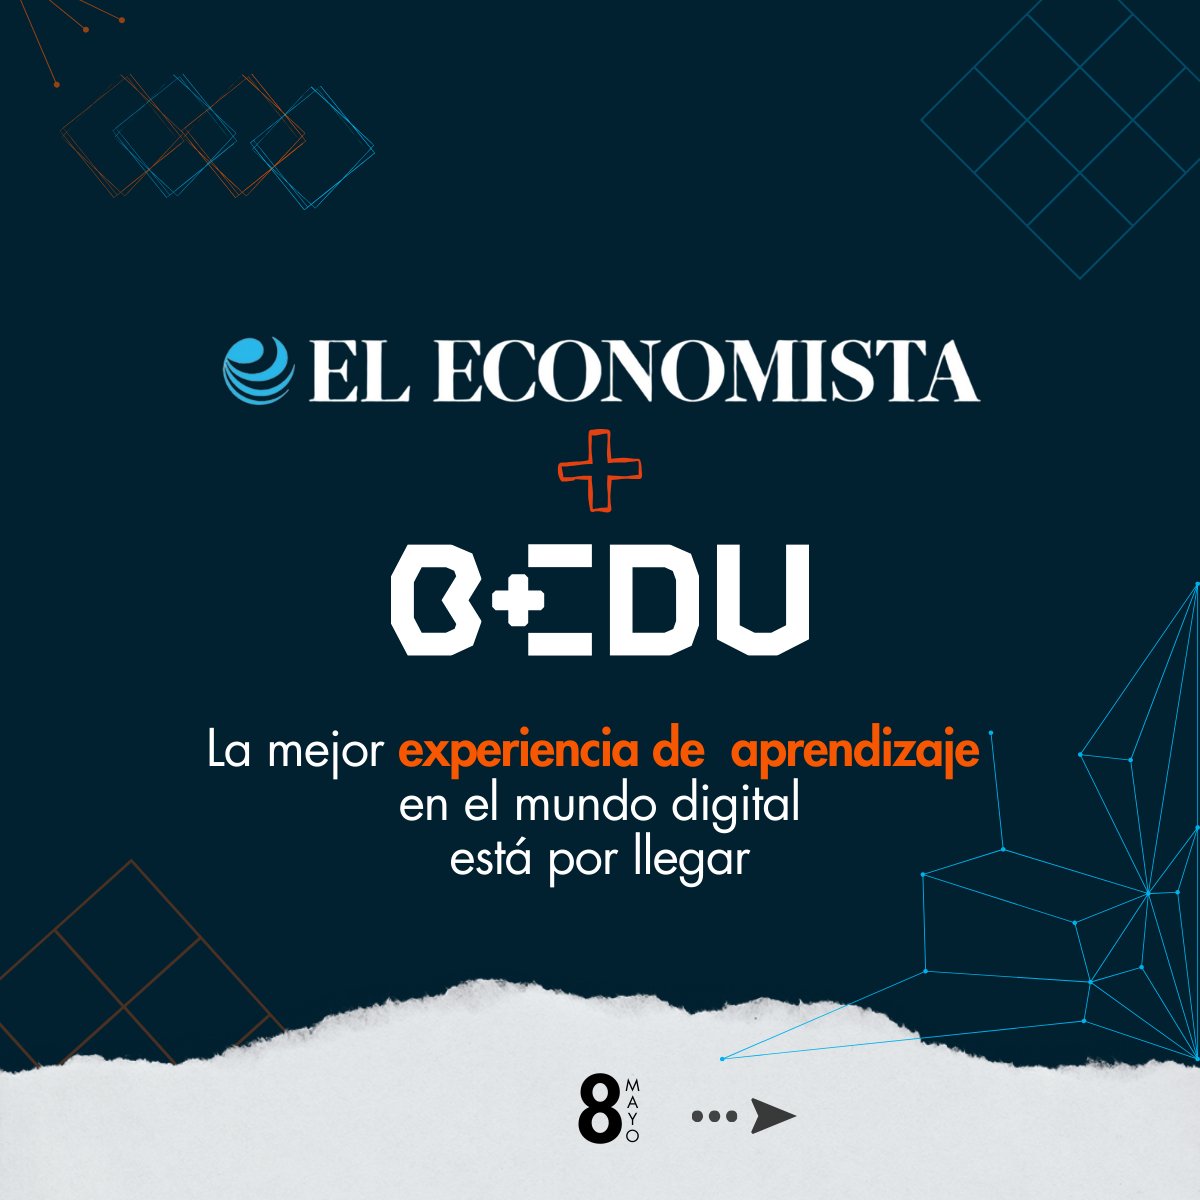 El aprendizaje digital, es la clave para tu éxito.  #BEDU y #ELEconomista juntos para una nueva experiencia de aprendizaje digital. Este 8 de mayo inicia una nueva historia. 😎 

#educación #contenidodigital #enportada #cultura #culturadigital #Bedu